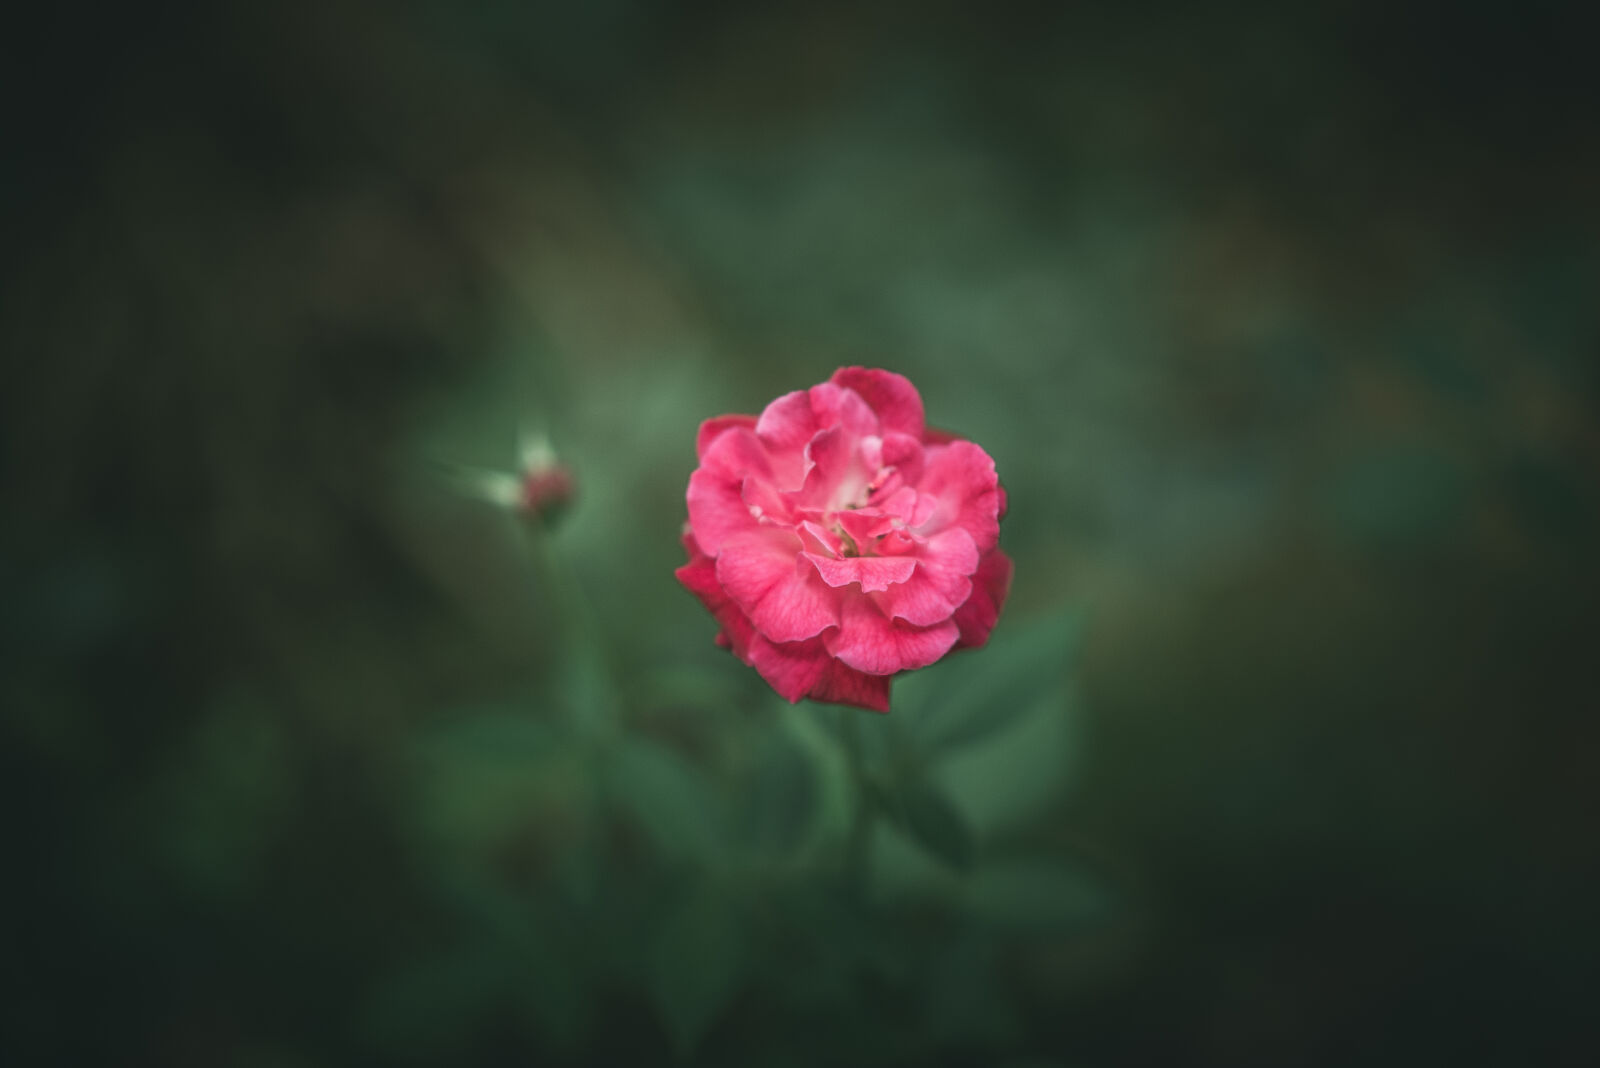 Nikon AF-S Nikkor 85mm F1.8G sample photo. Pink, rose, flower, close photography